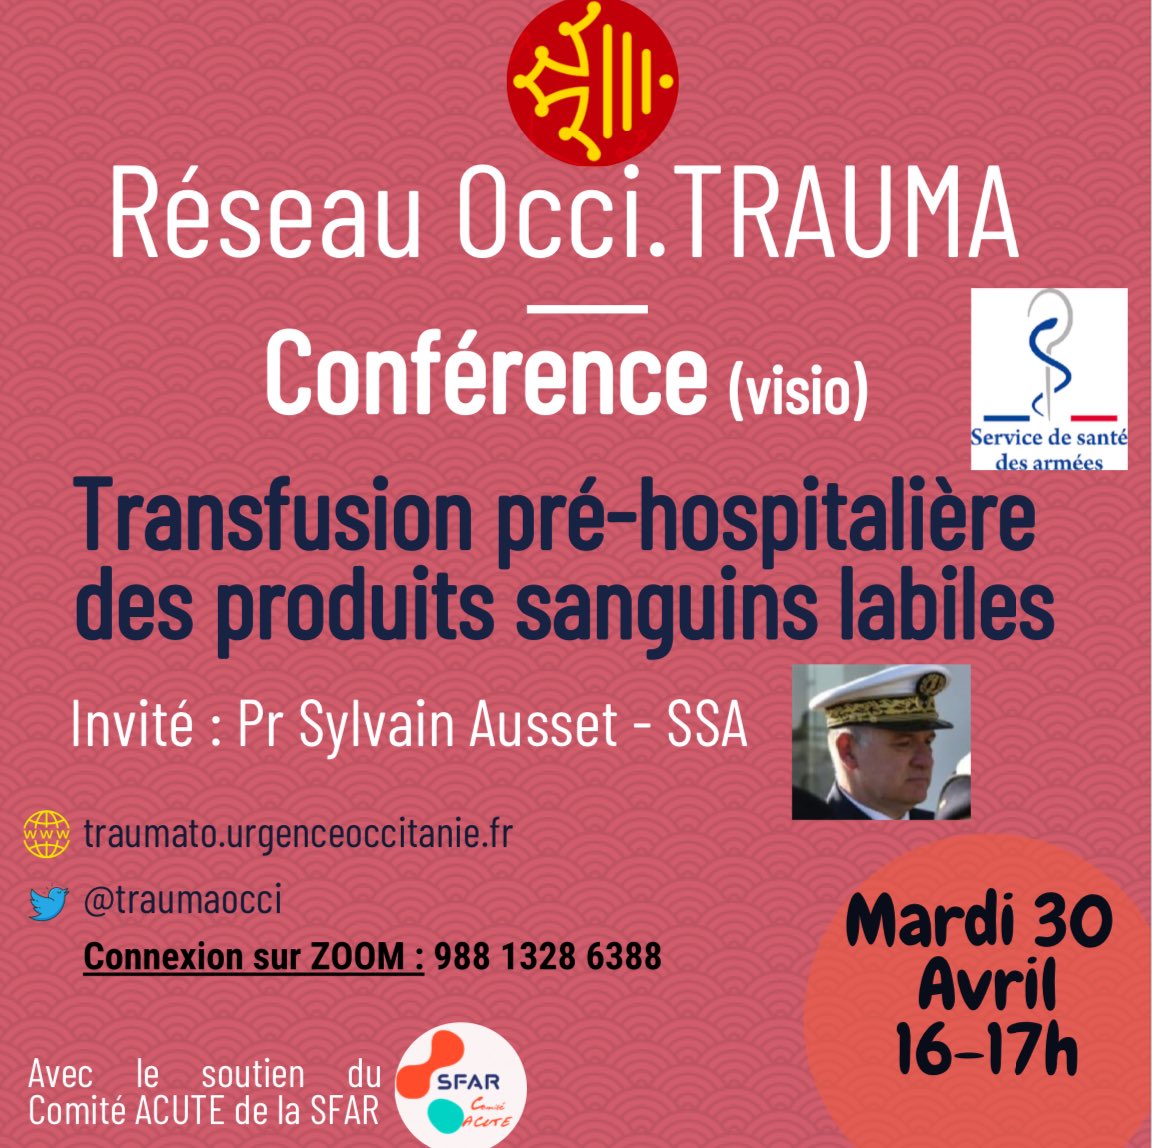 Le réseau @TraumaOcci présente une nouvelle conférence mardi par le Pr Ausset du service de @santearmees. 🗓️ Retrouvez nous MARDI 30 AVRIL ⏰16-17h pour parler transfusion sanguine 🩸 pré hospitalière ! @SFAR_ORG @SFARJeunes @AJARFrance @cnear_fr @TrybuReseau @TReHaut_hdf